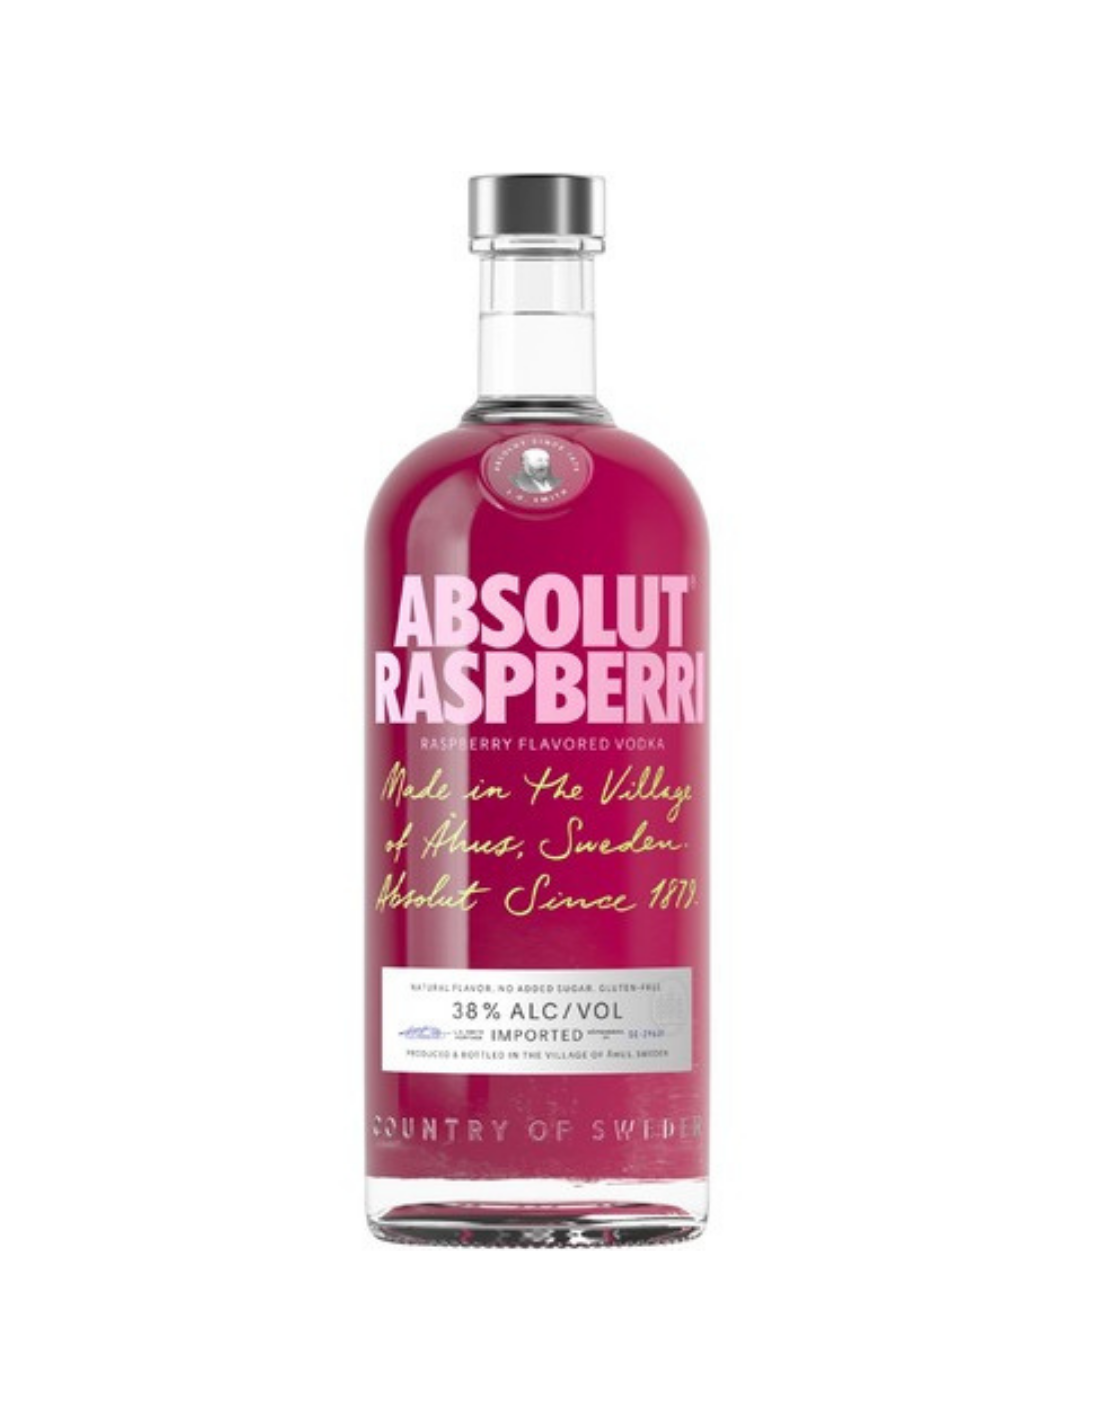 Vodca Absolut Raspberri, 0.7L, 38% alc., Suedia alcooldiscount.ro